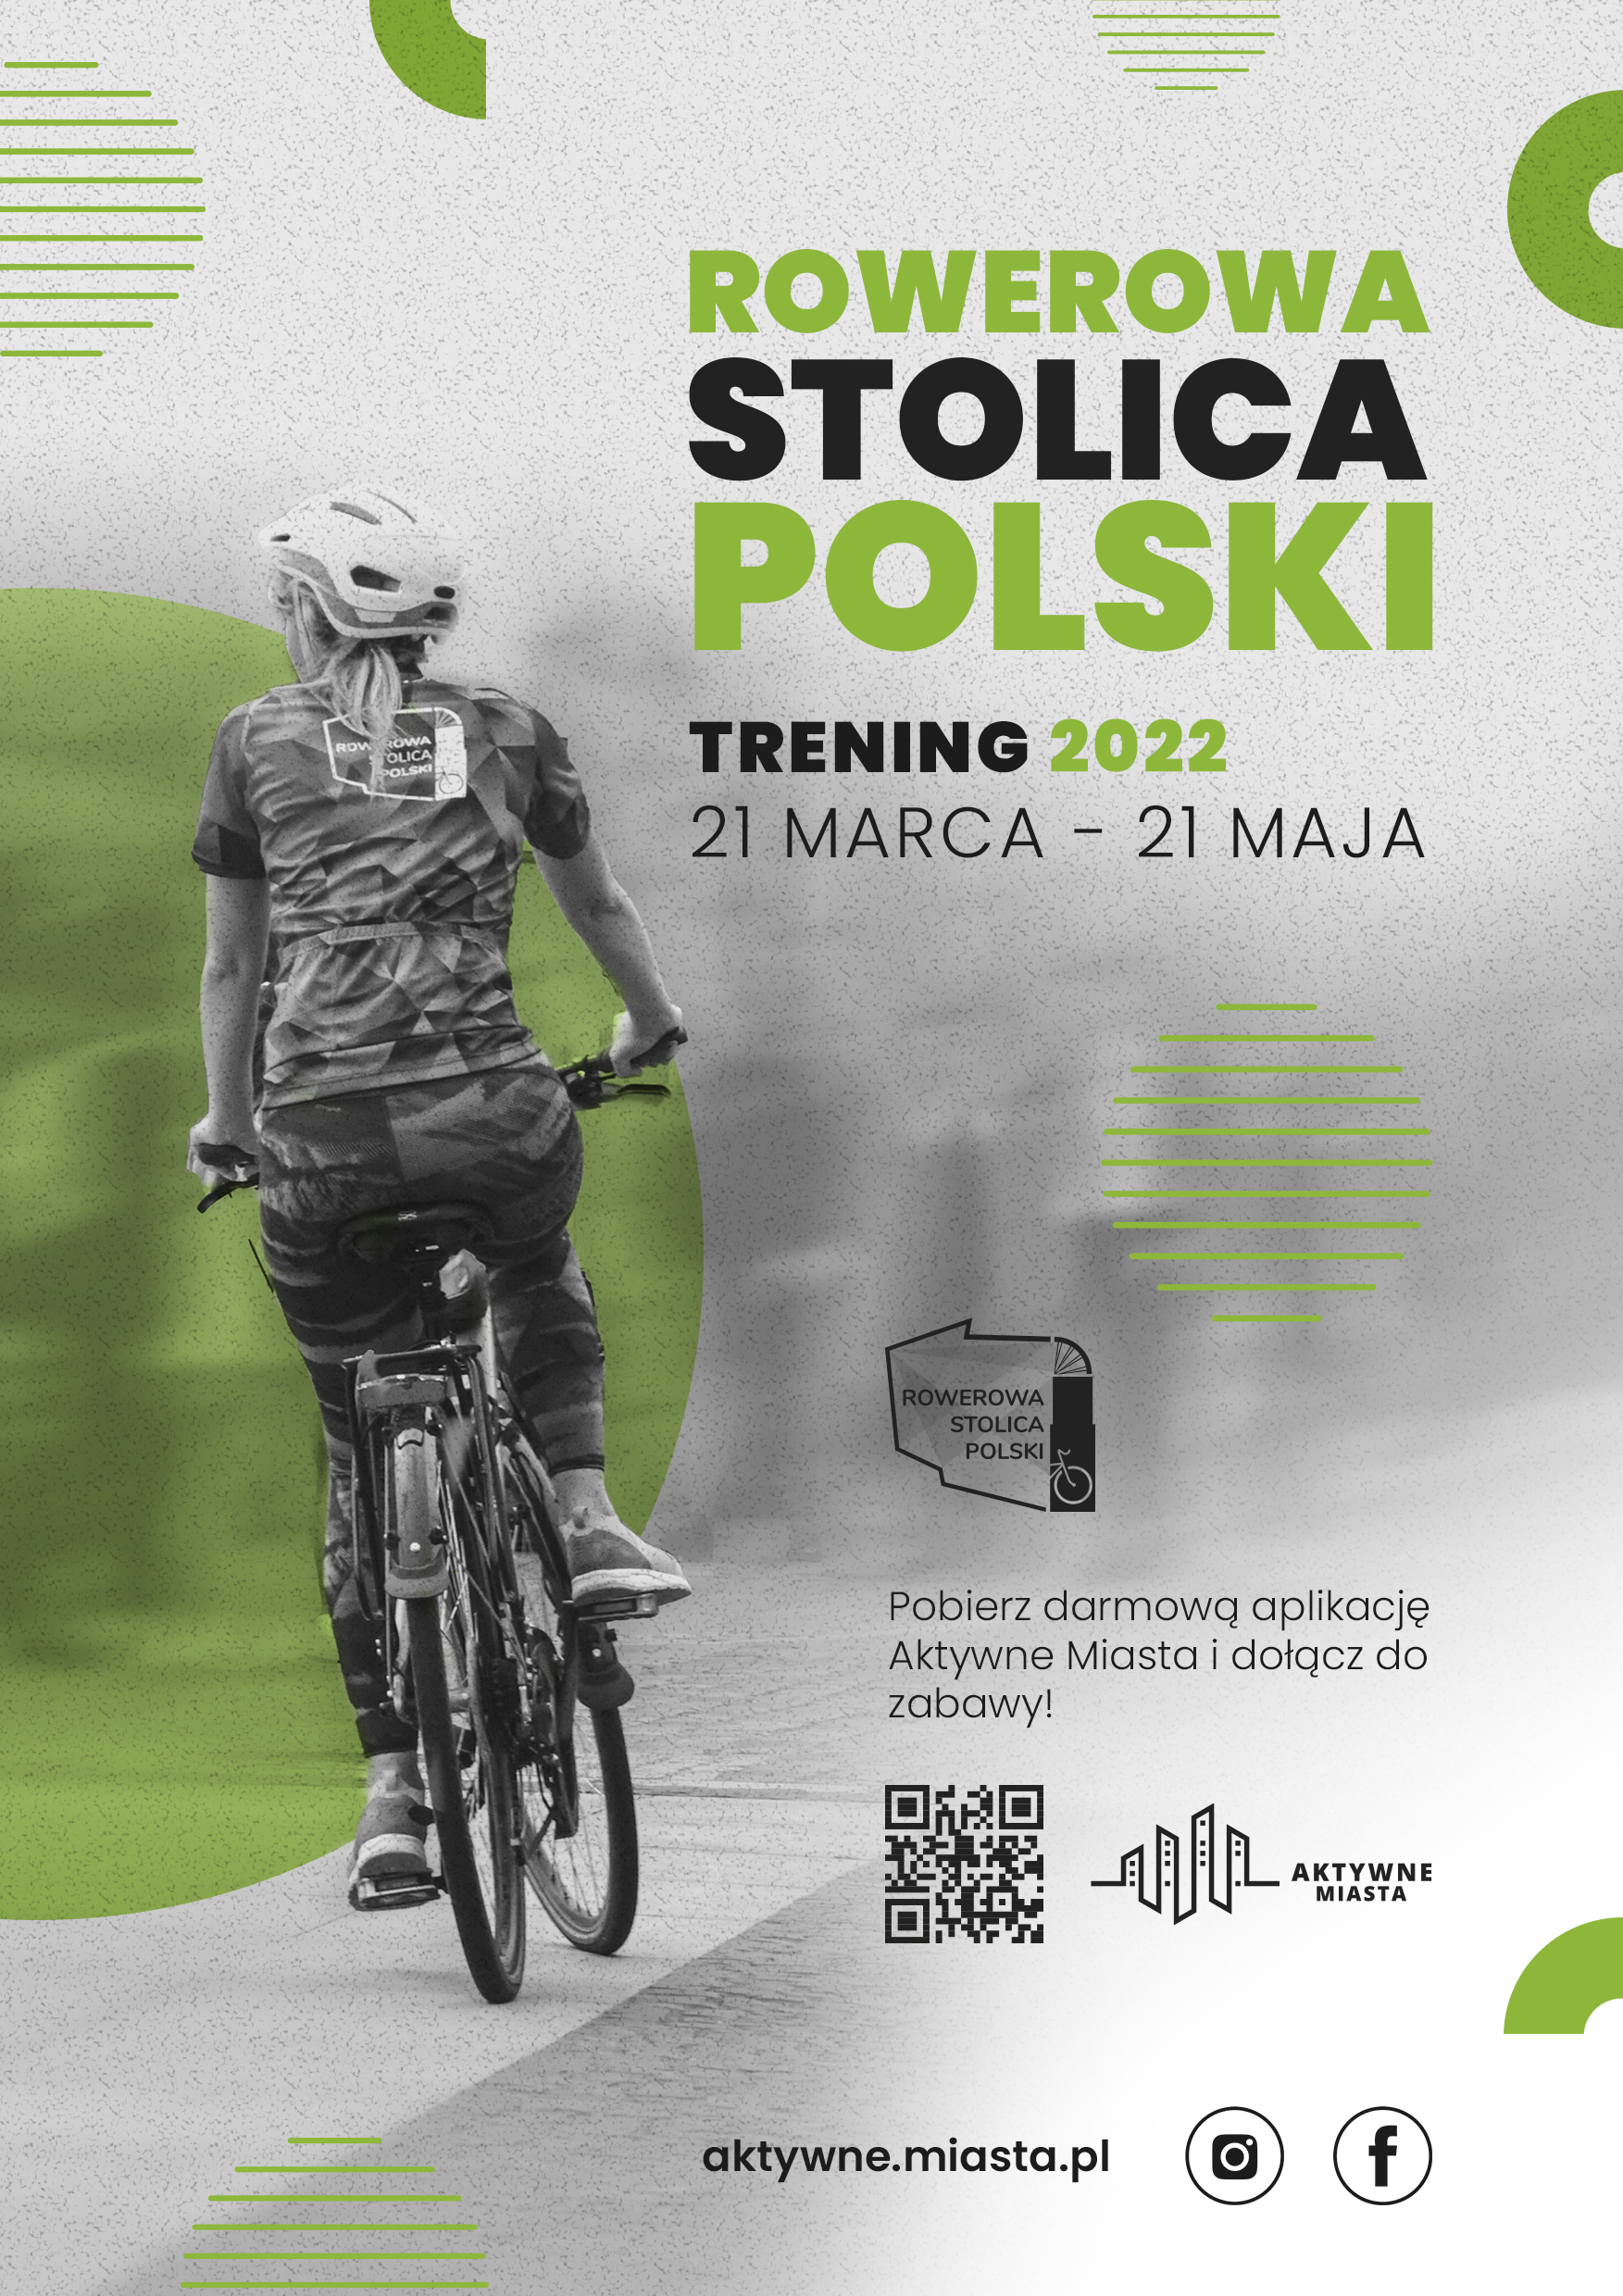 Plakat promujący trening Rowerowa Stolica Polski 2022